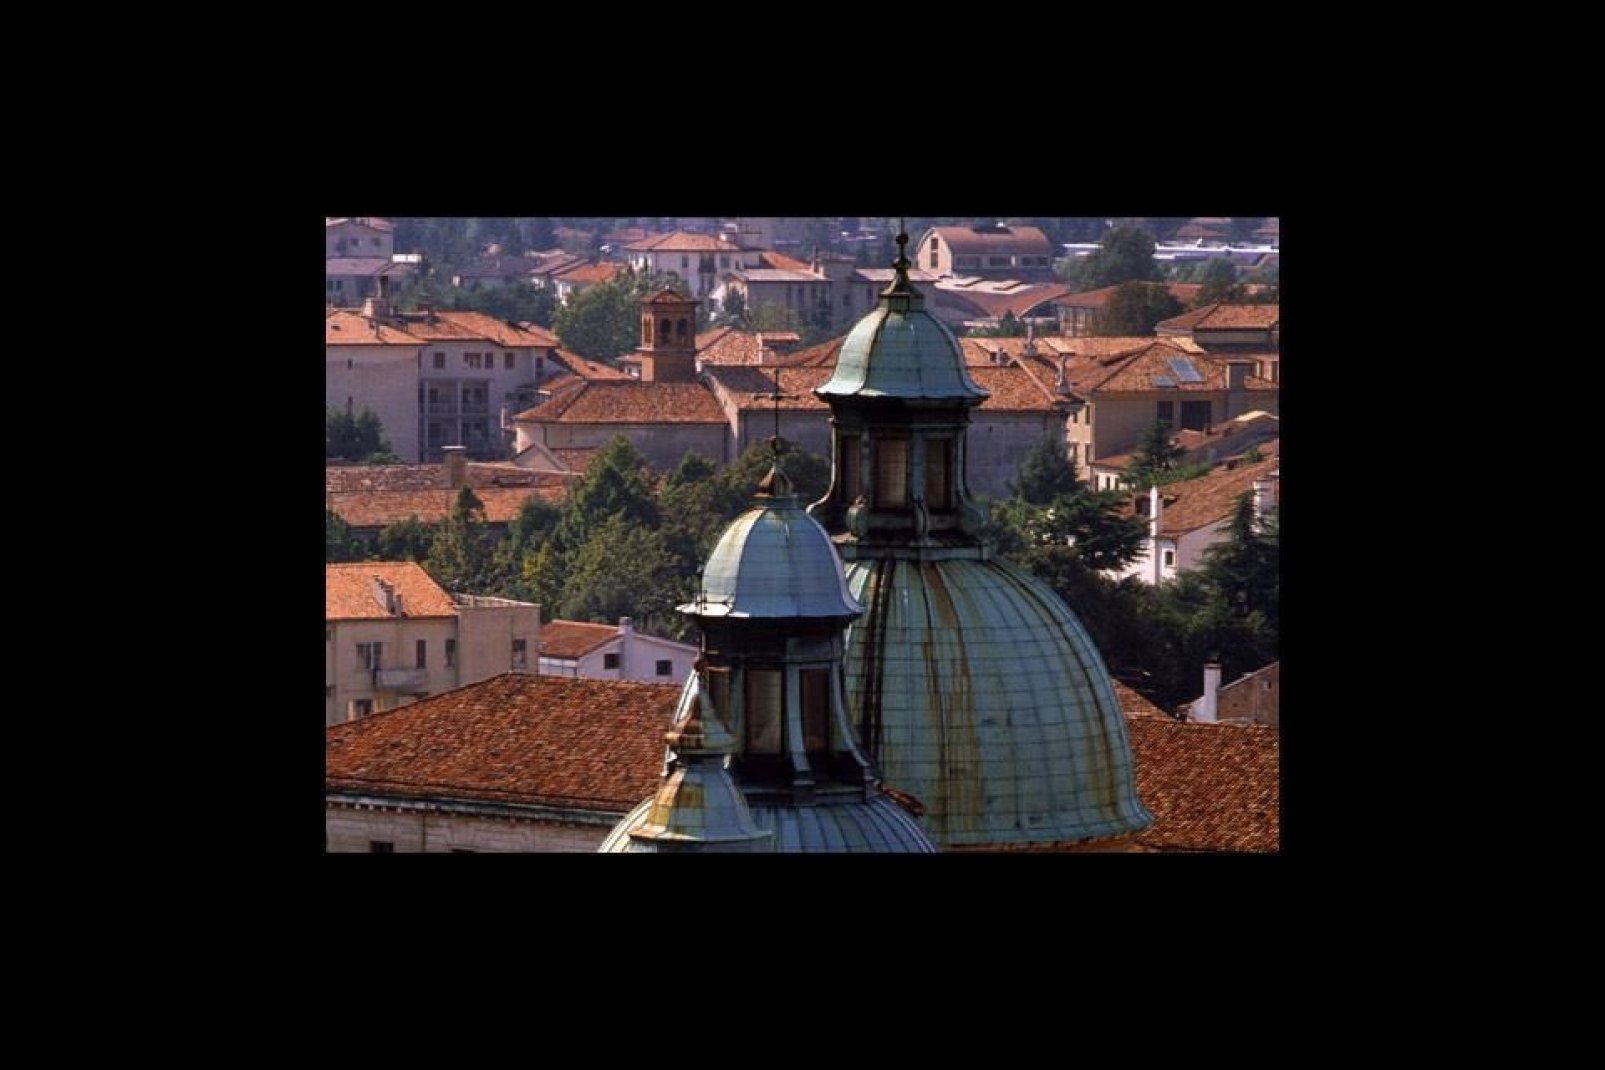 Detailansicht der Apsis des Doms von Treviso, der dem Hl. Petrus geweiht ist, mit 7 Kuppeln im Außenbereich.